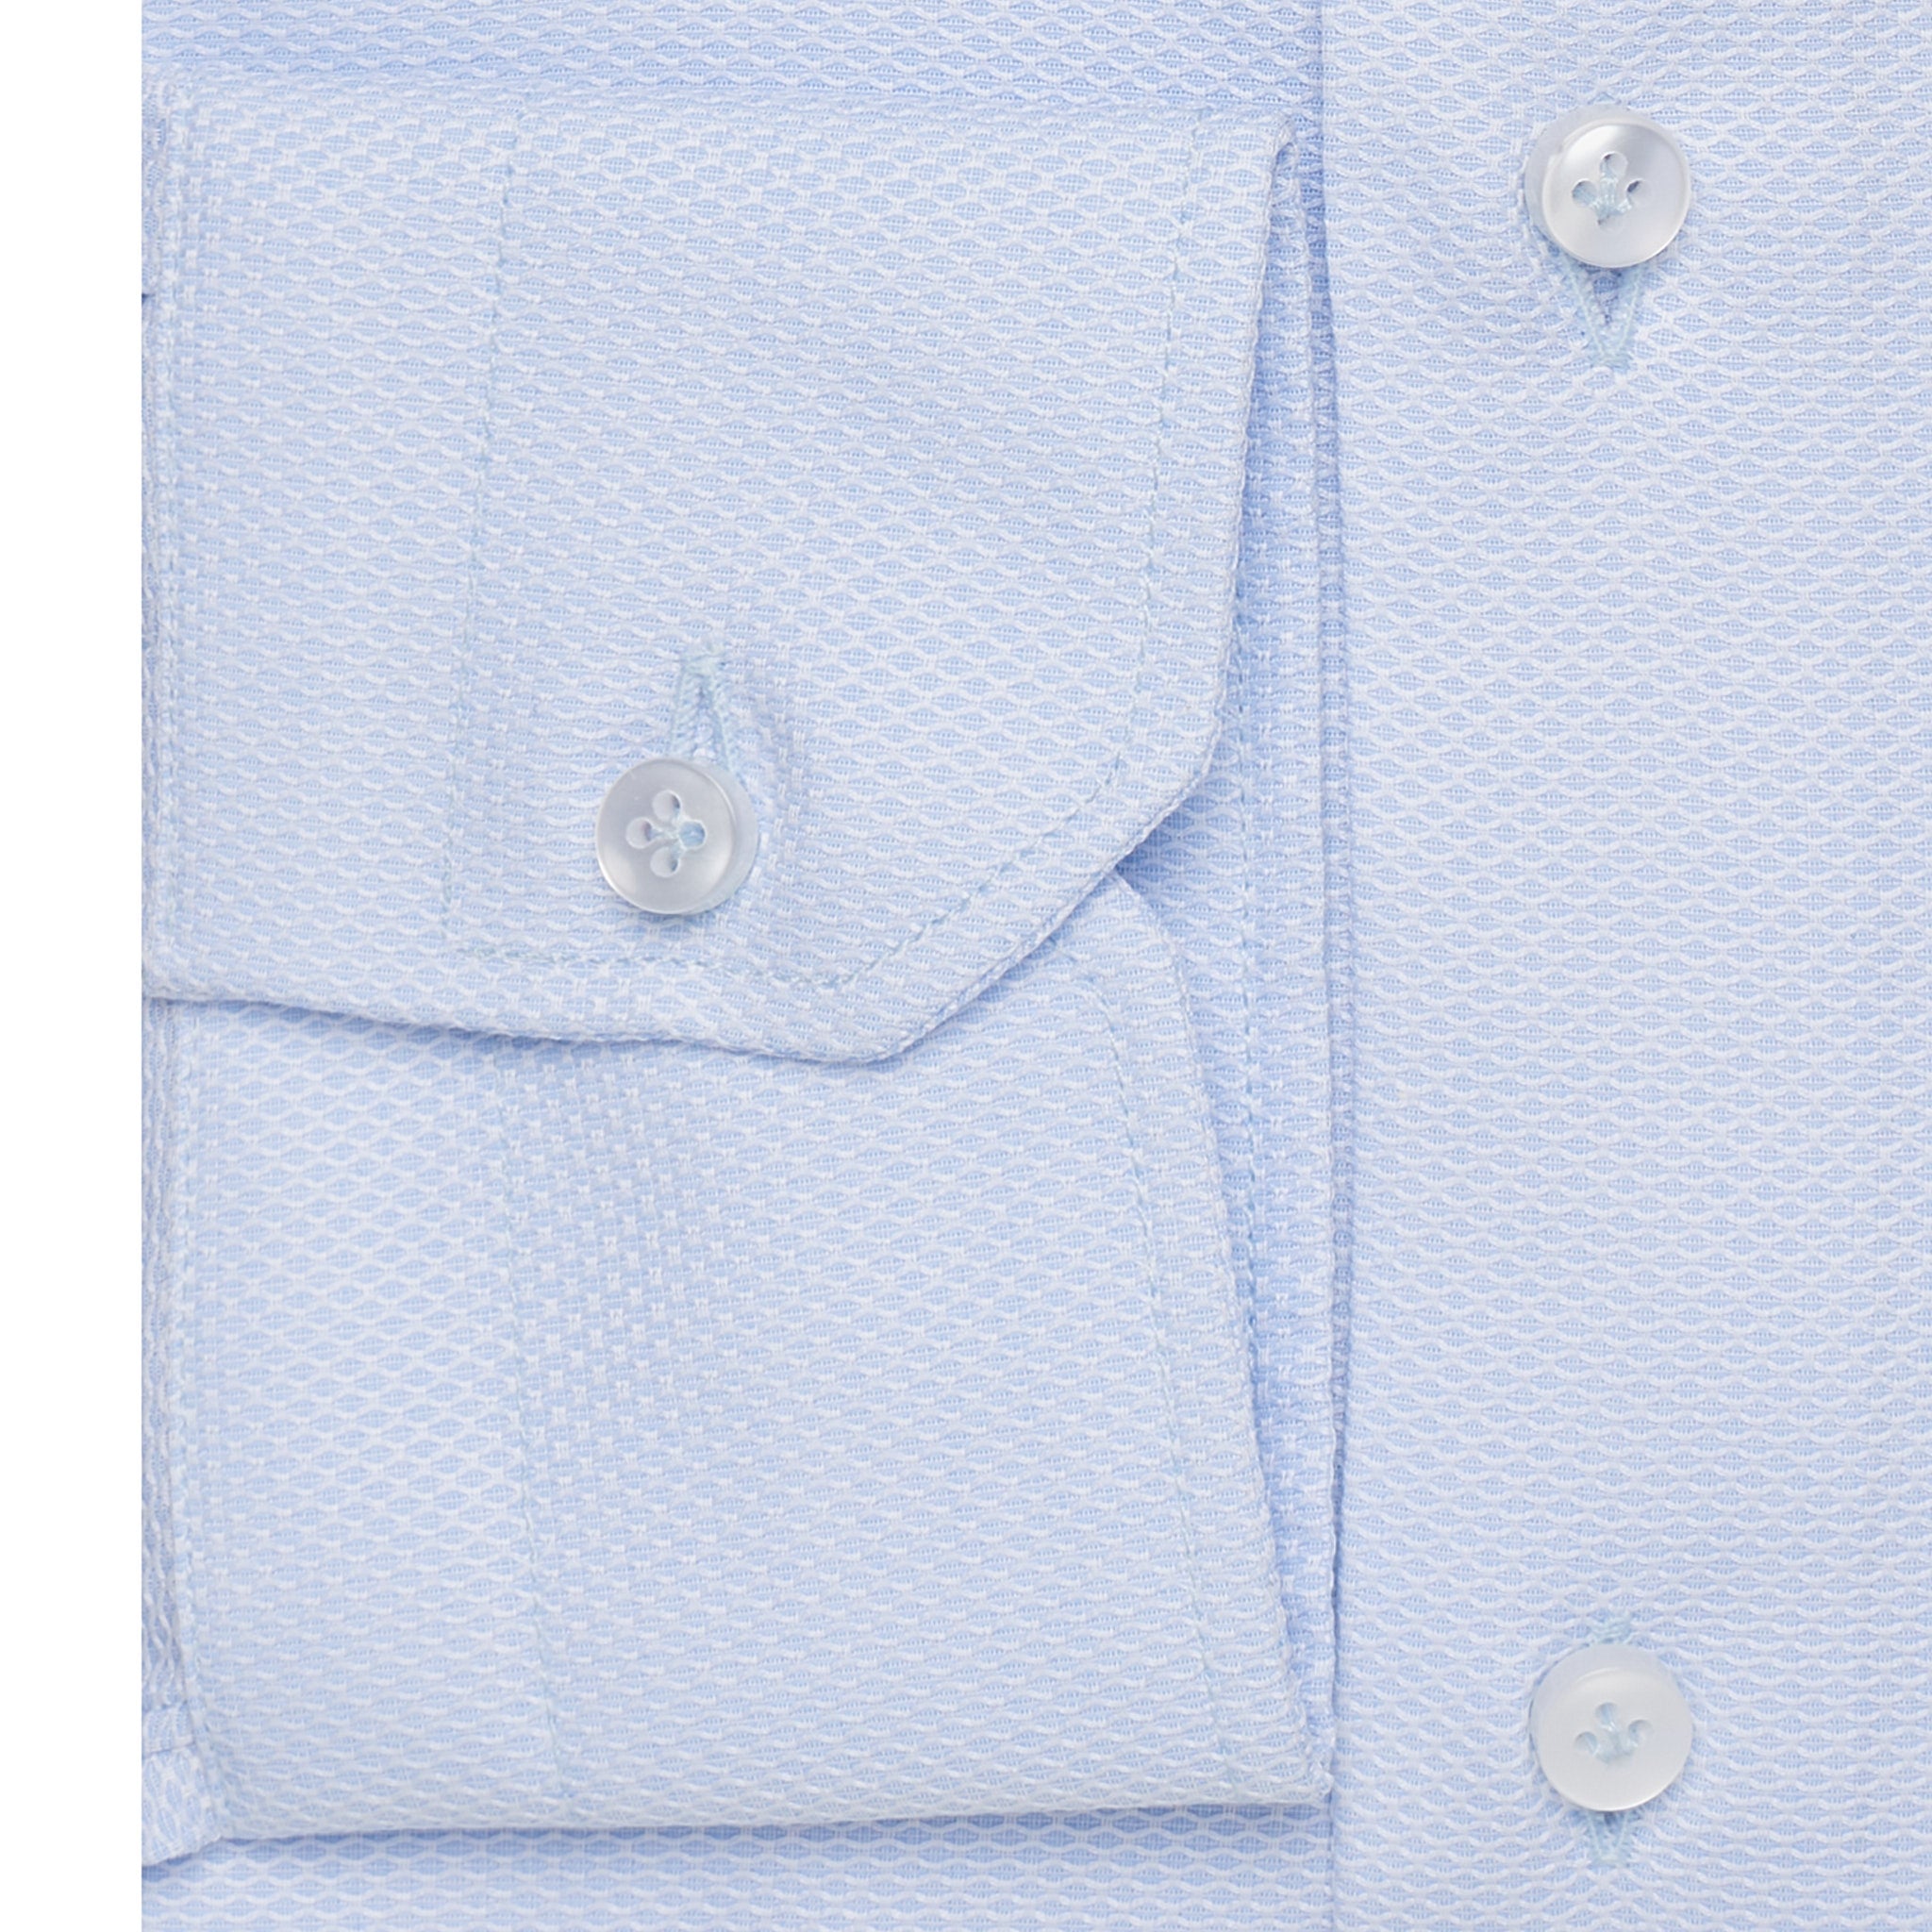 SARTORIO by KITON Light Blue Dobby Cotton Dress Shirt NEW Slim Fit SARTORIO